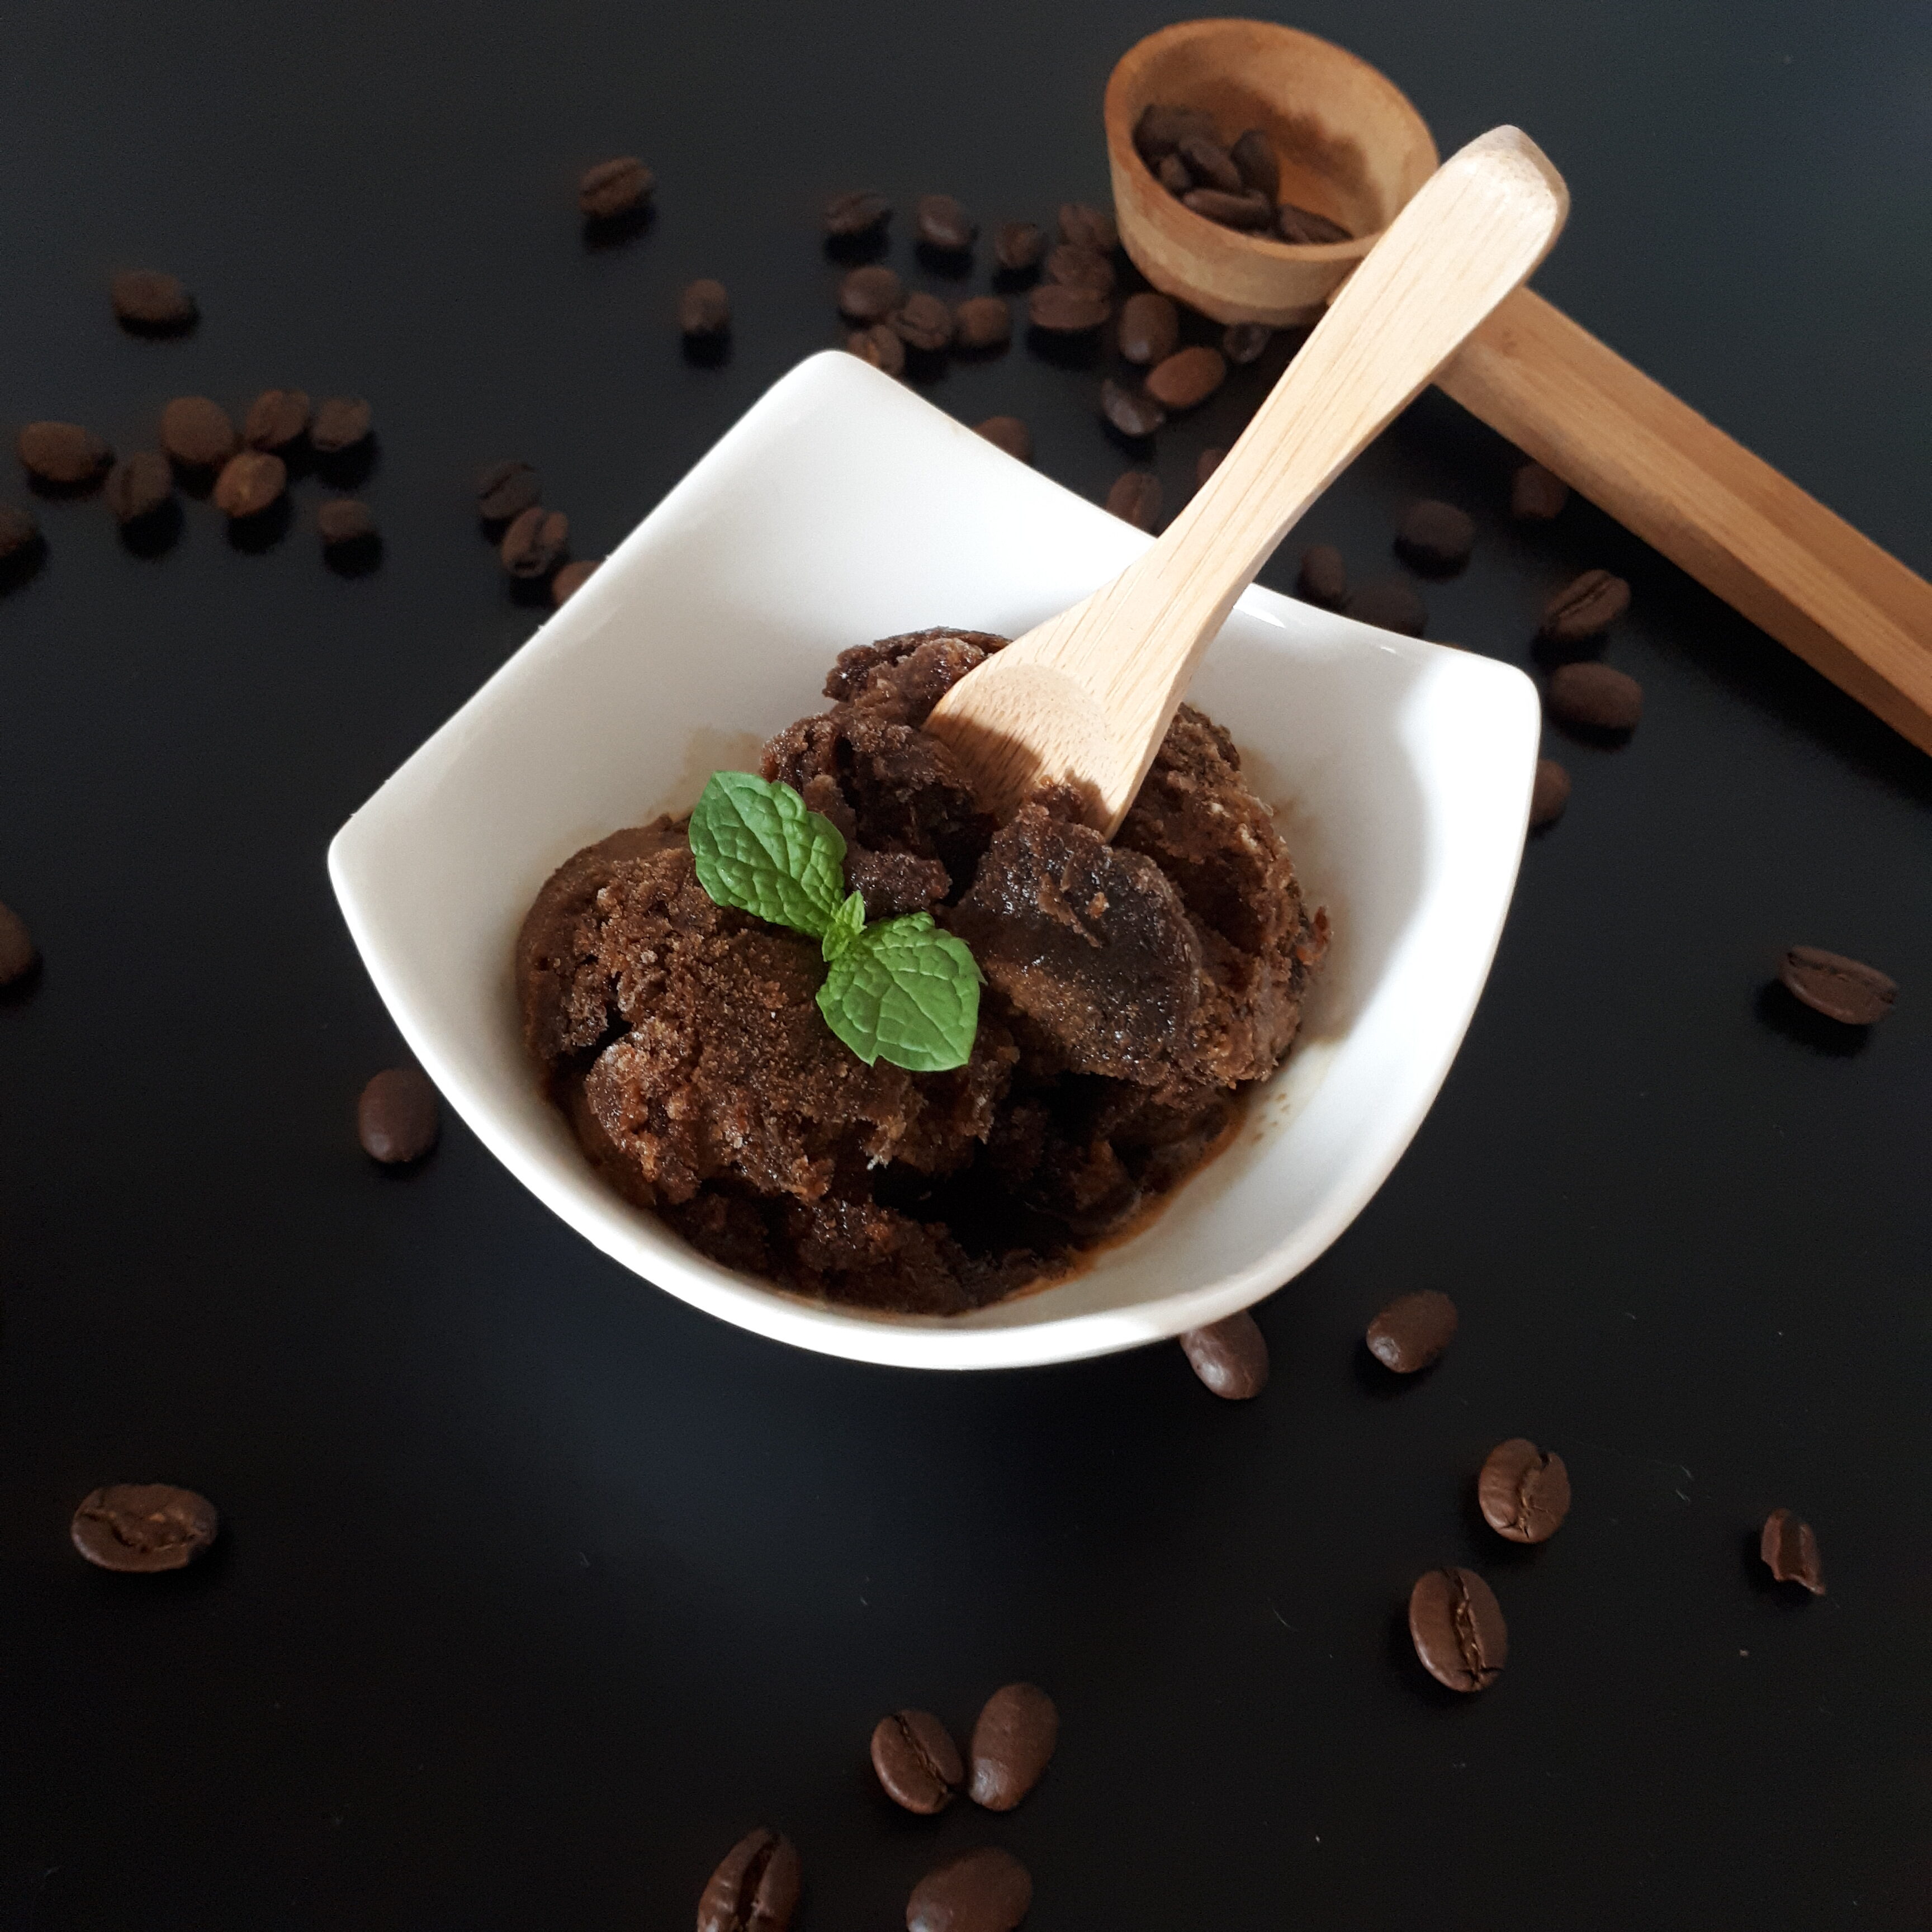 Biela miska s kávovým sorbetom ozdobeným mätou drevená zmrzlinová lyžička okolo rozsypané zrnká kávy v pozadí drevená odmerka na kávu na čiernom povrchu